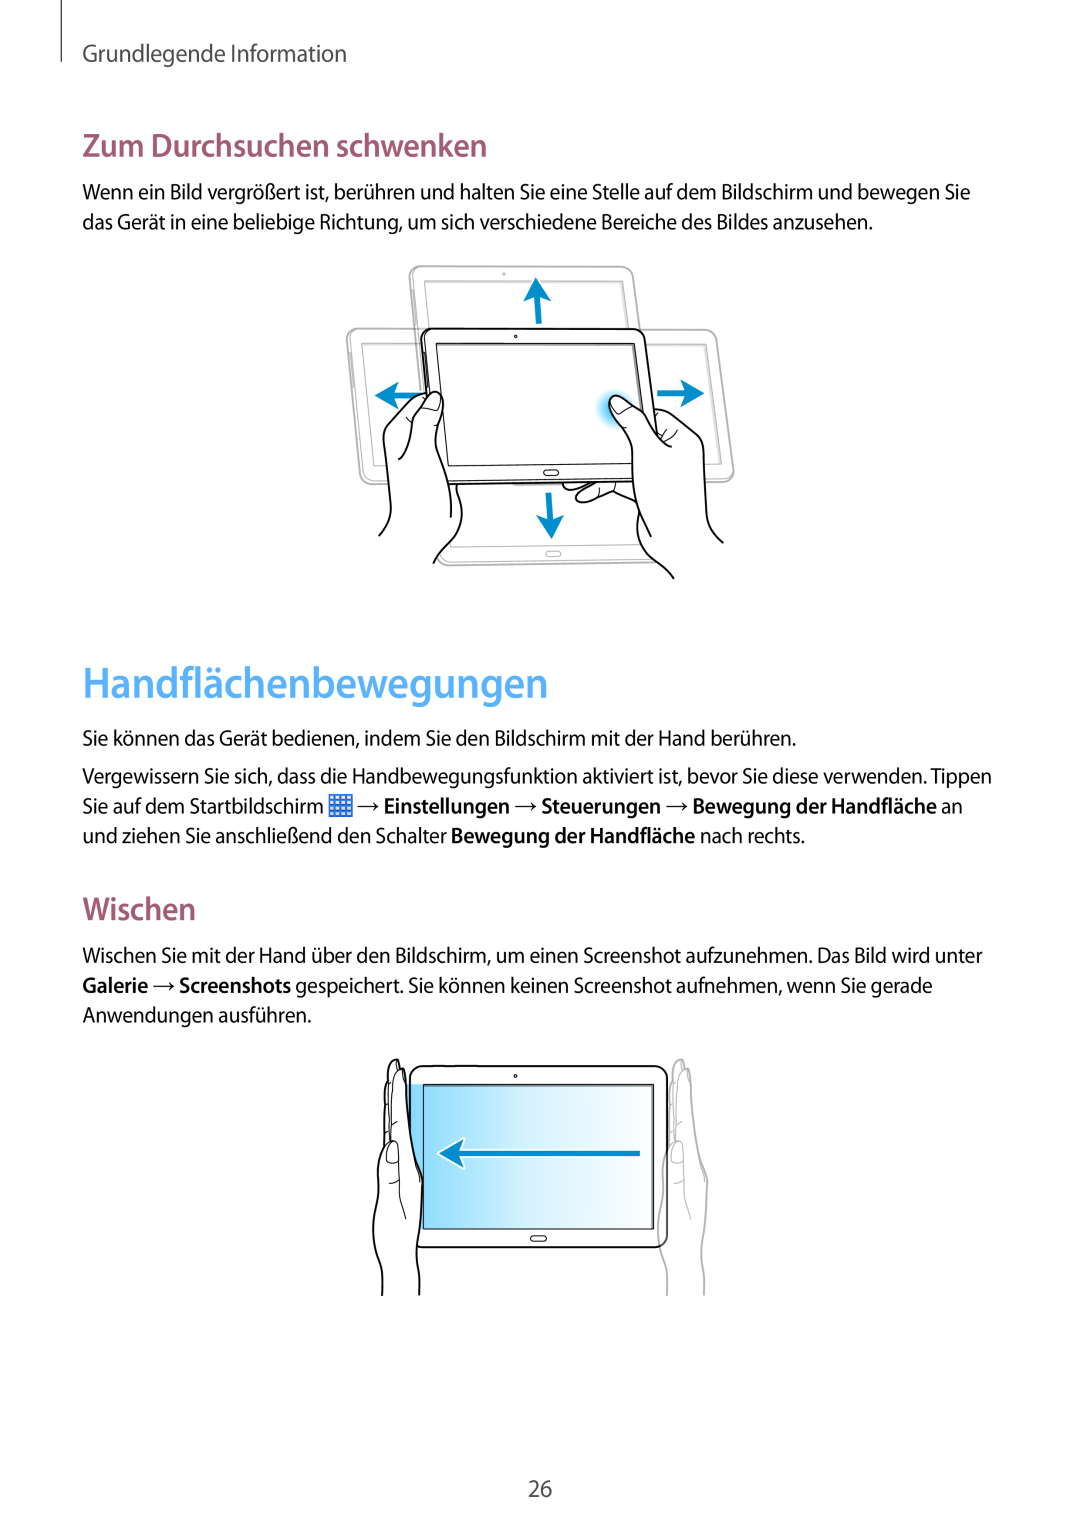 Samsung SM-P6050ZWAEUR, SM-P6050ZKAITV Handflächenbewegungen, Zum Durchsuchen schwenken, Wischen, Grundlegende Information 